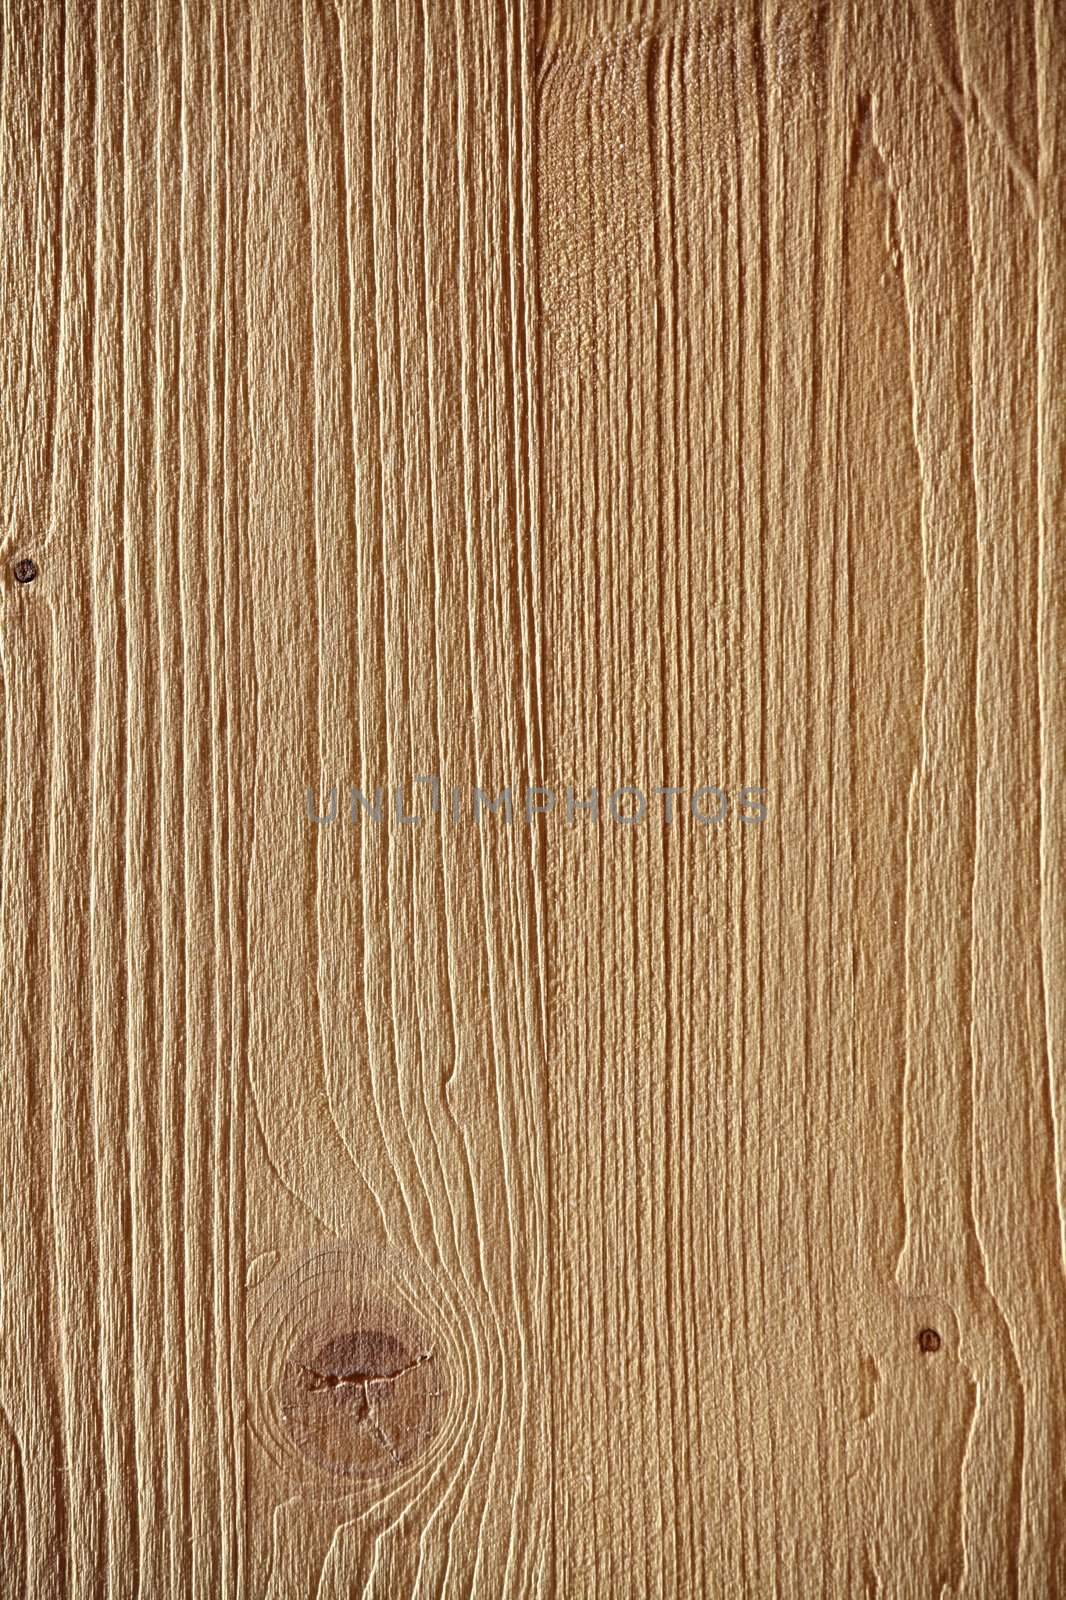 Wood by Gudella